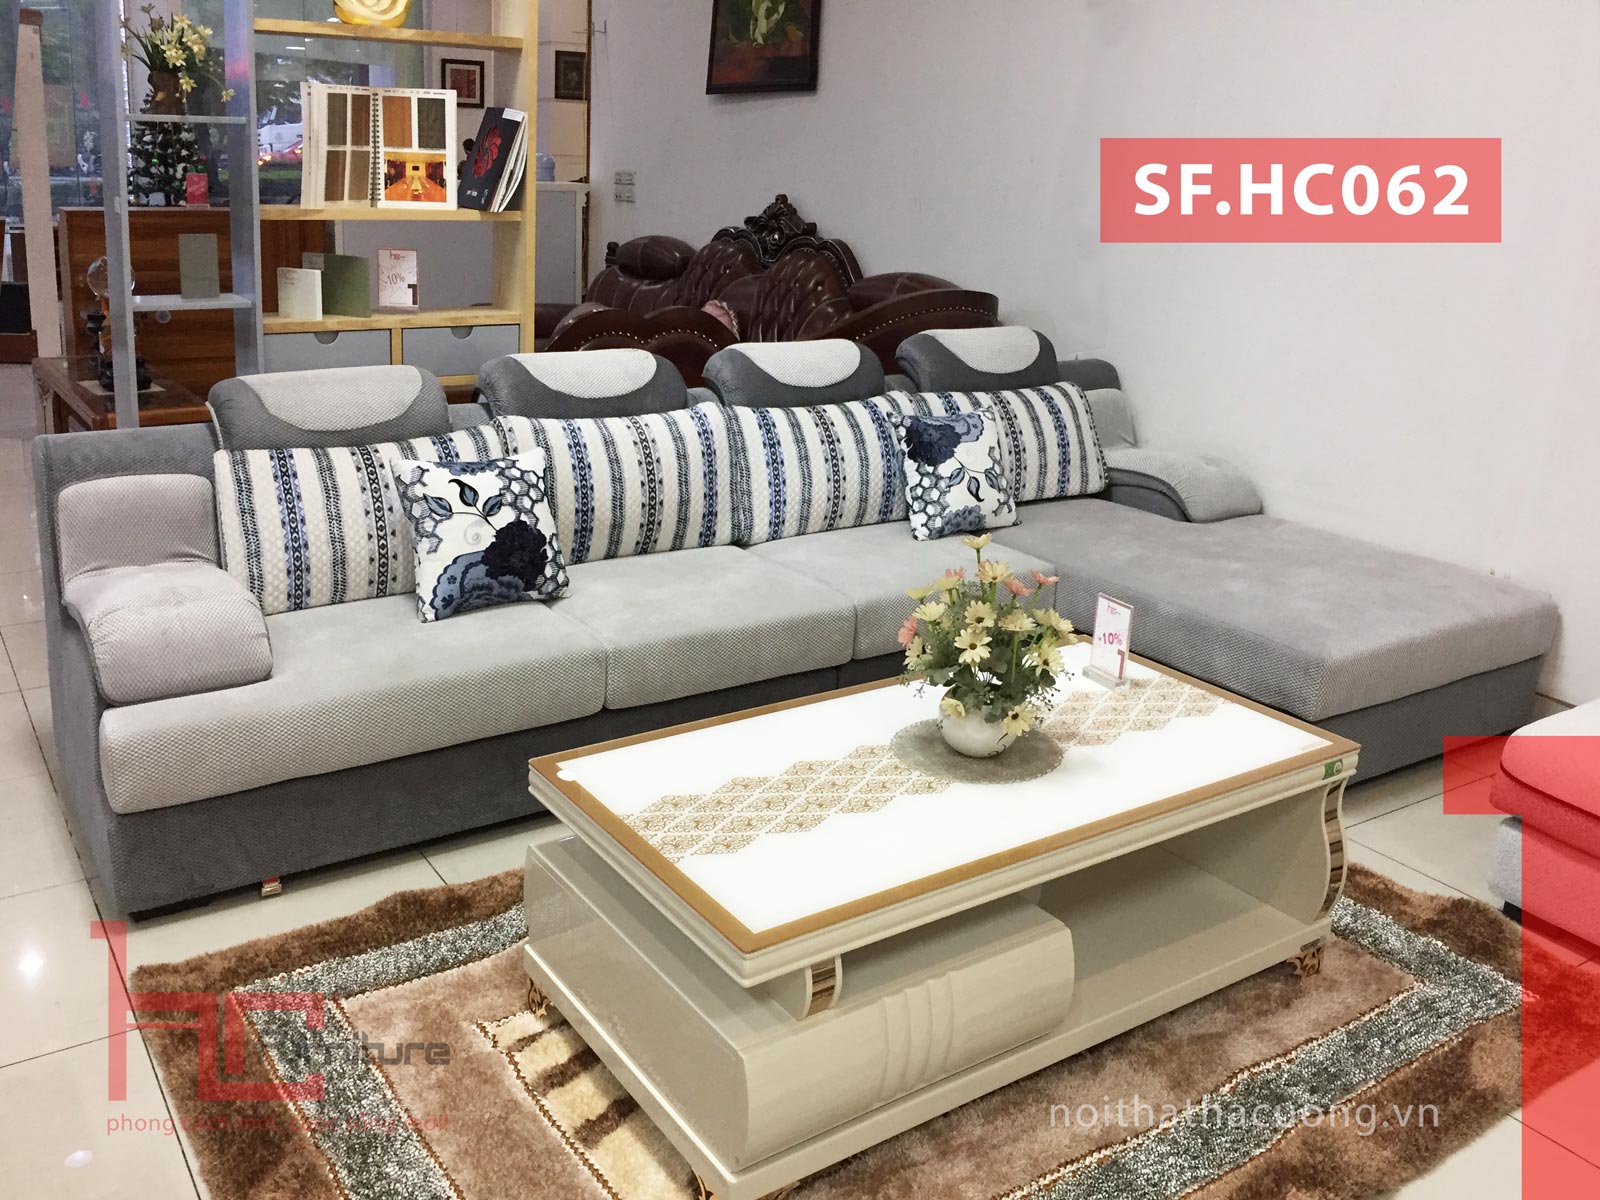 Tại sao bạn nên mua sofa chữ L - Sofa cho phòng khách nhỏ